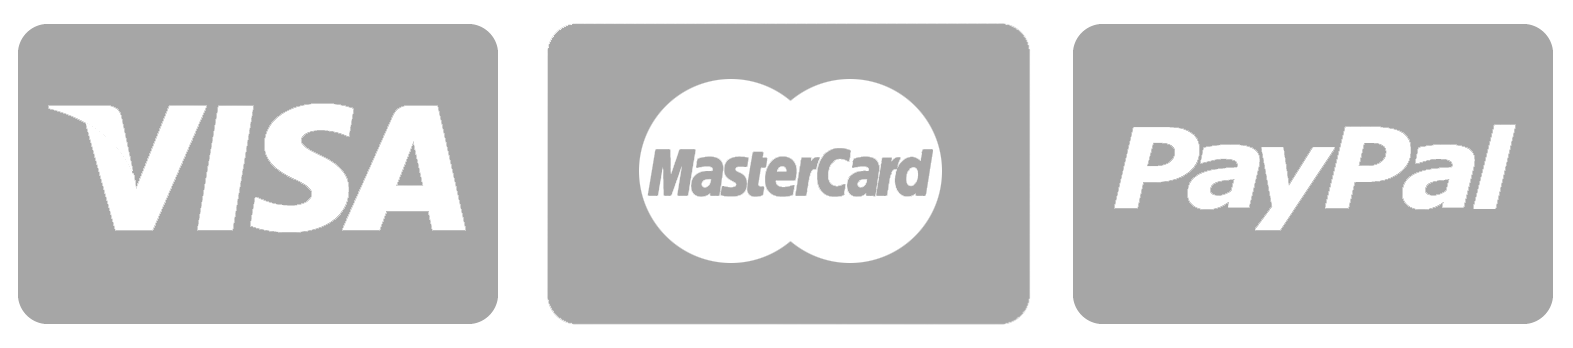 Visa MasterCard Logo - Visa Mastercard Paypal